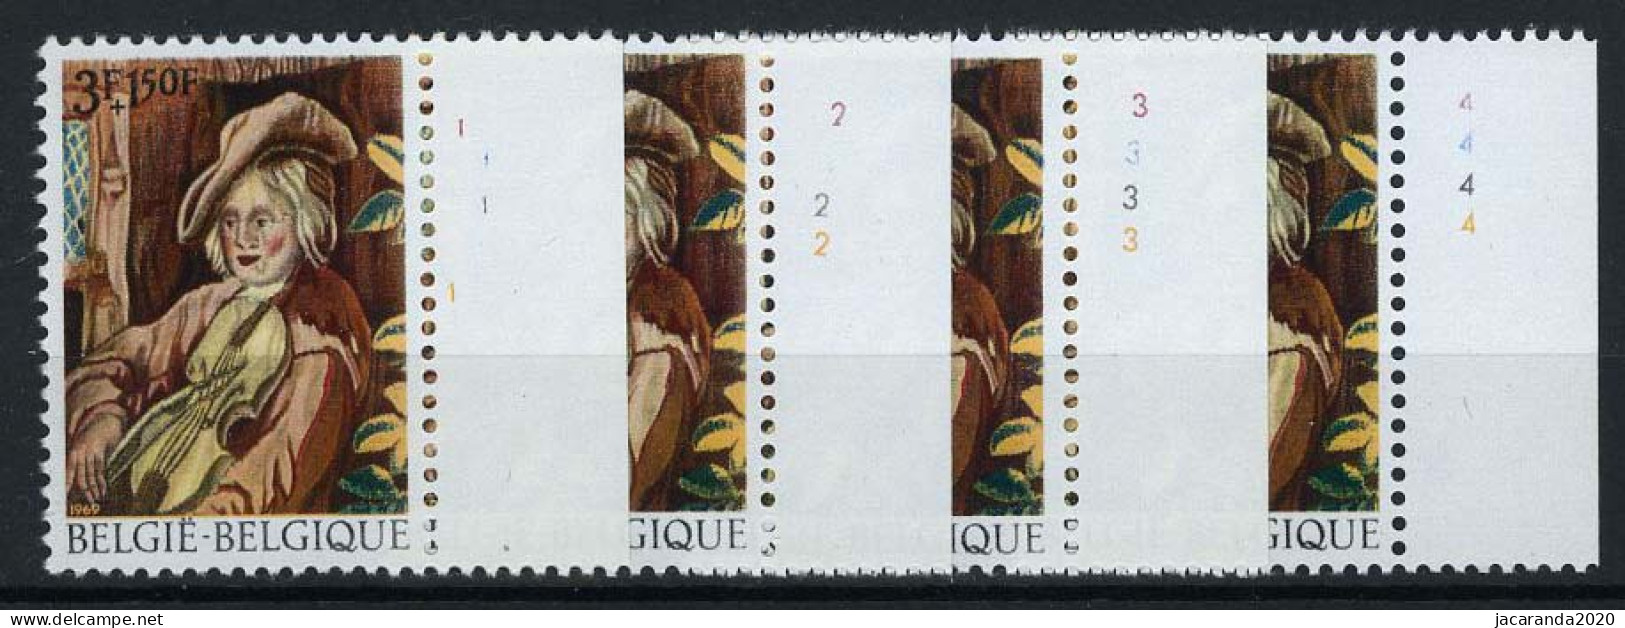 België 1506 - Kunsttapijten - David II Teniers - Plnr 1/4 - 1961-1970